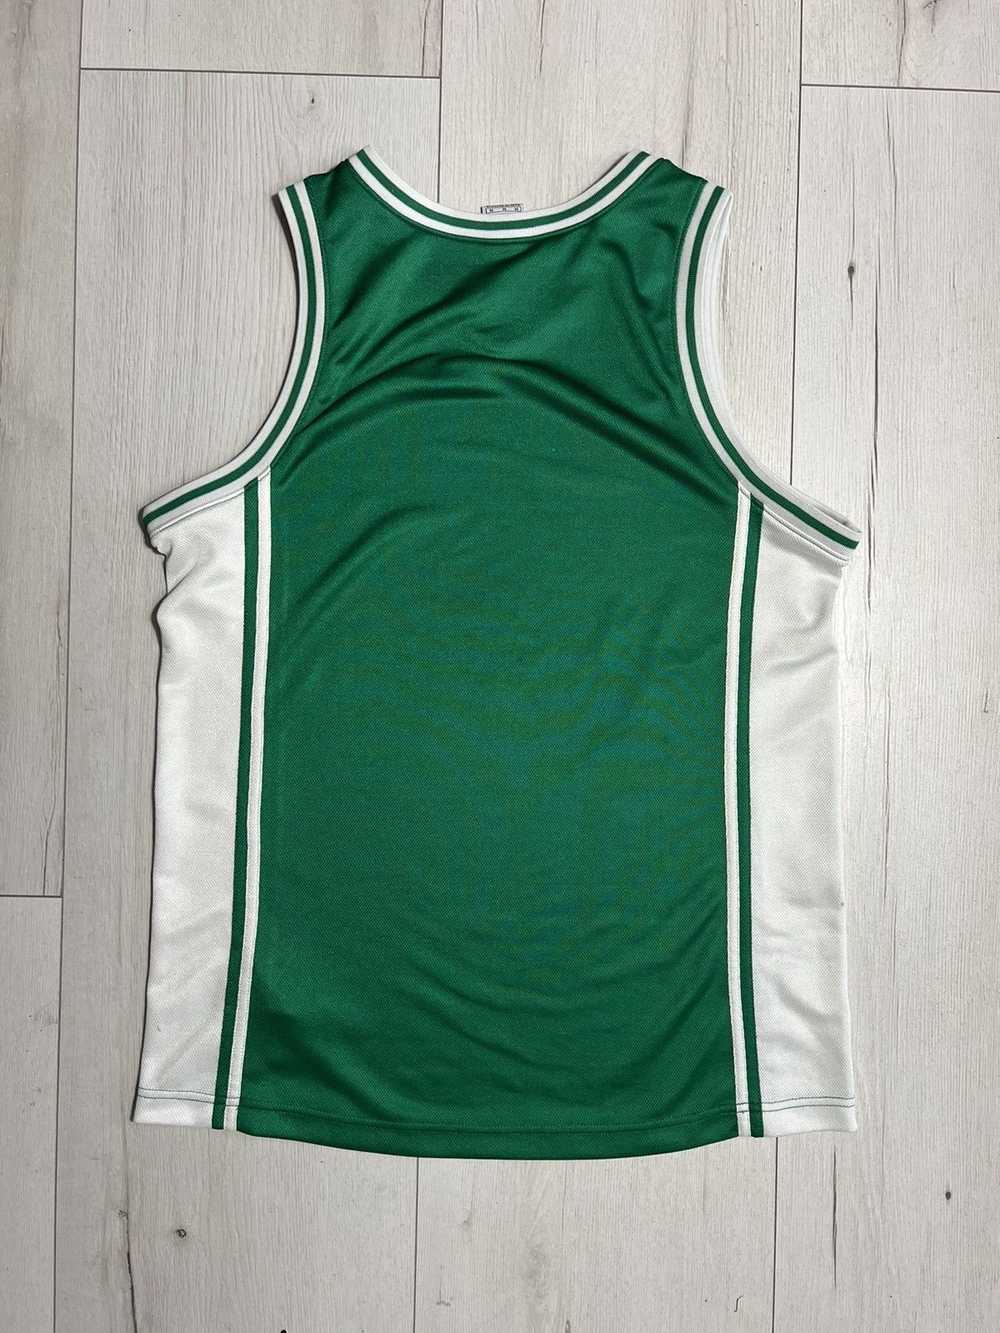 1990x Clothing × NBA × Nike Basketball shirt 90s … - image 2